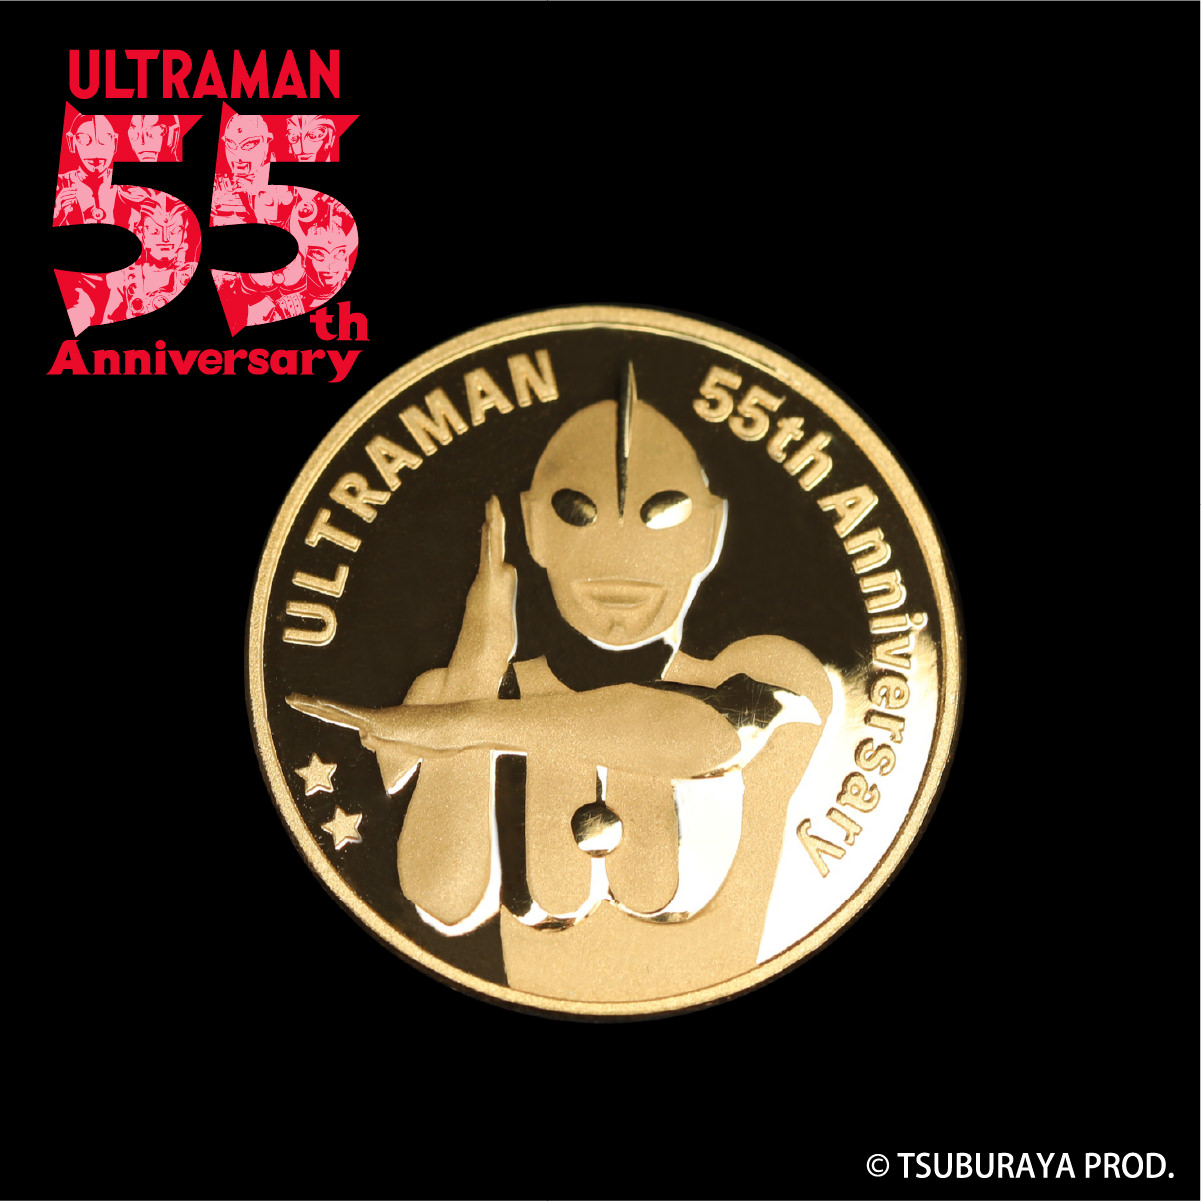 ウルトラマン 純金メダル 55th Anniversary 限定55個